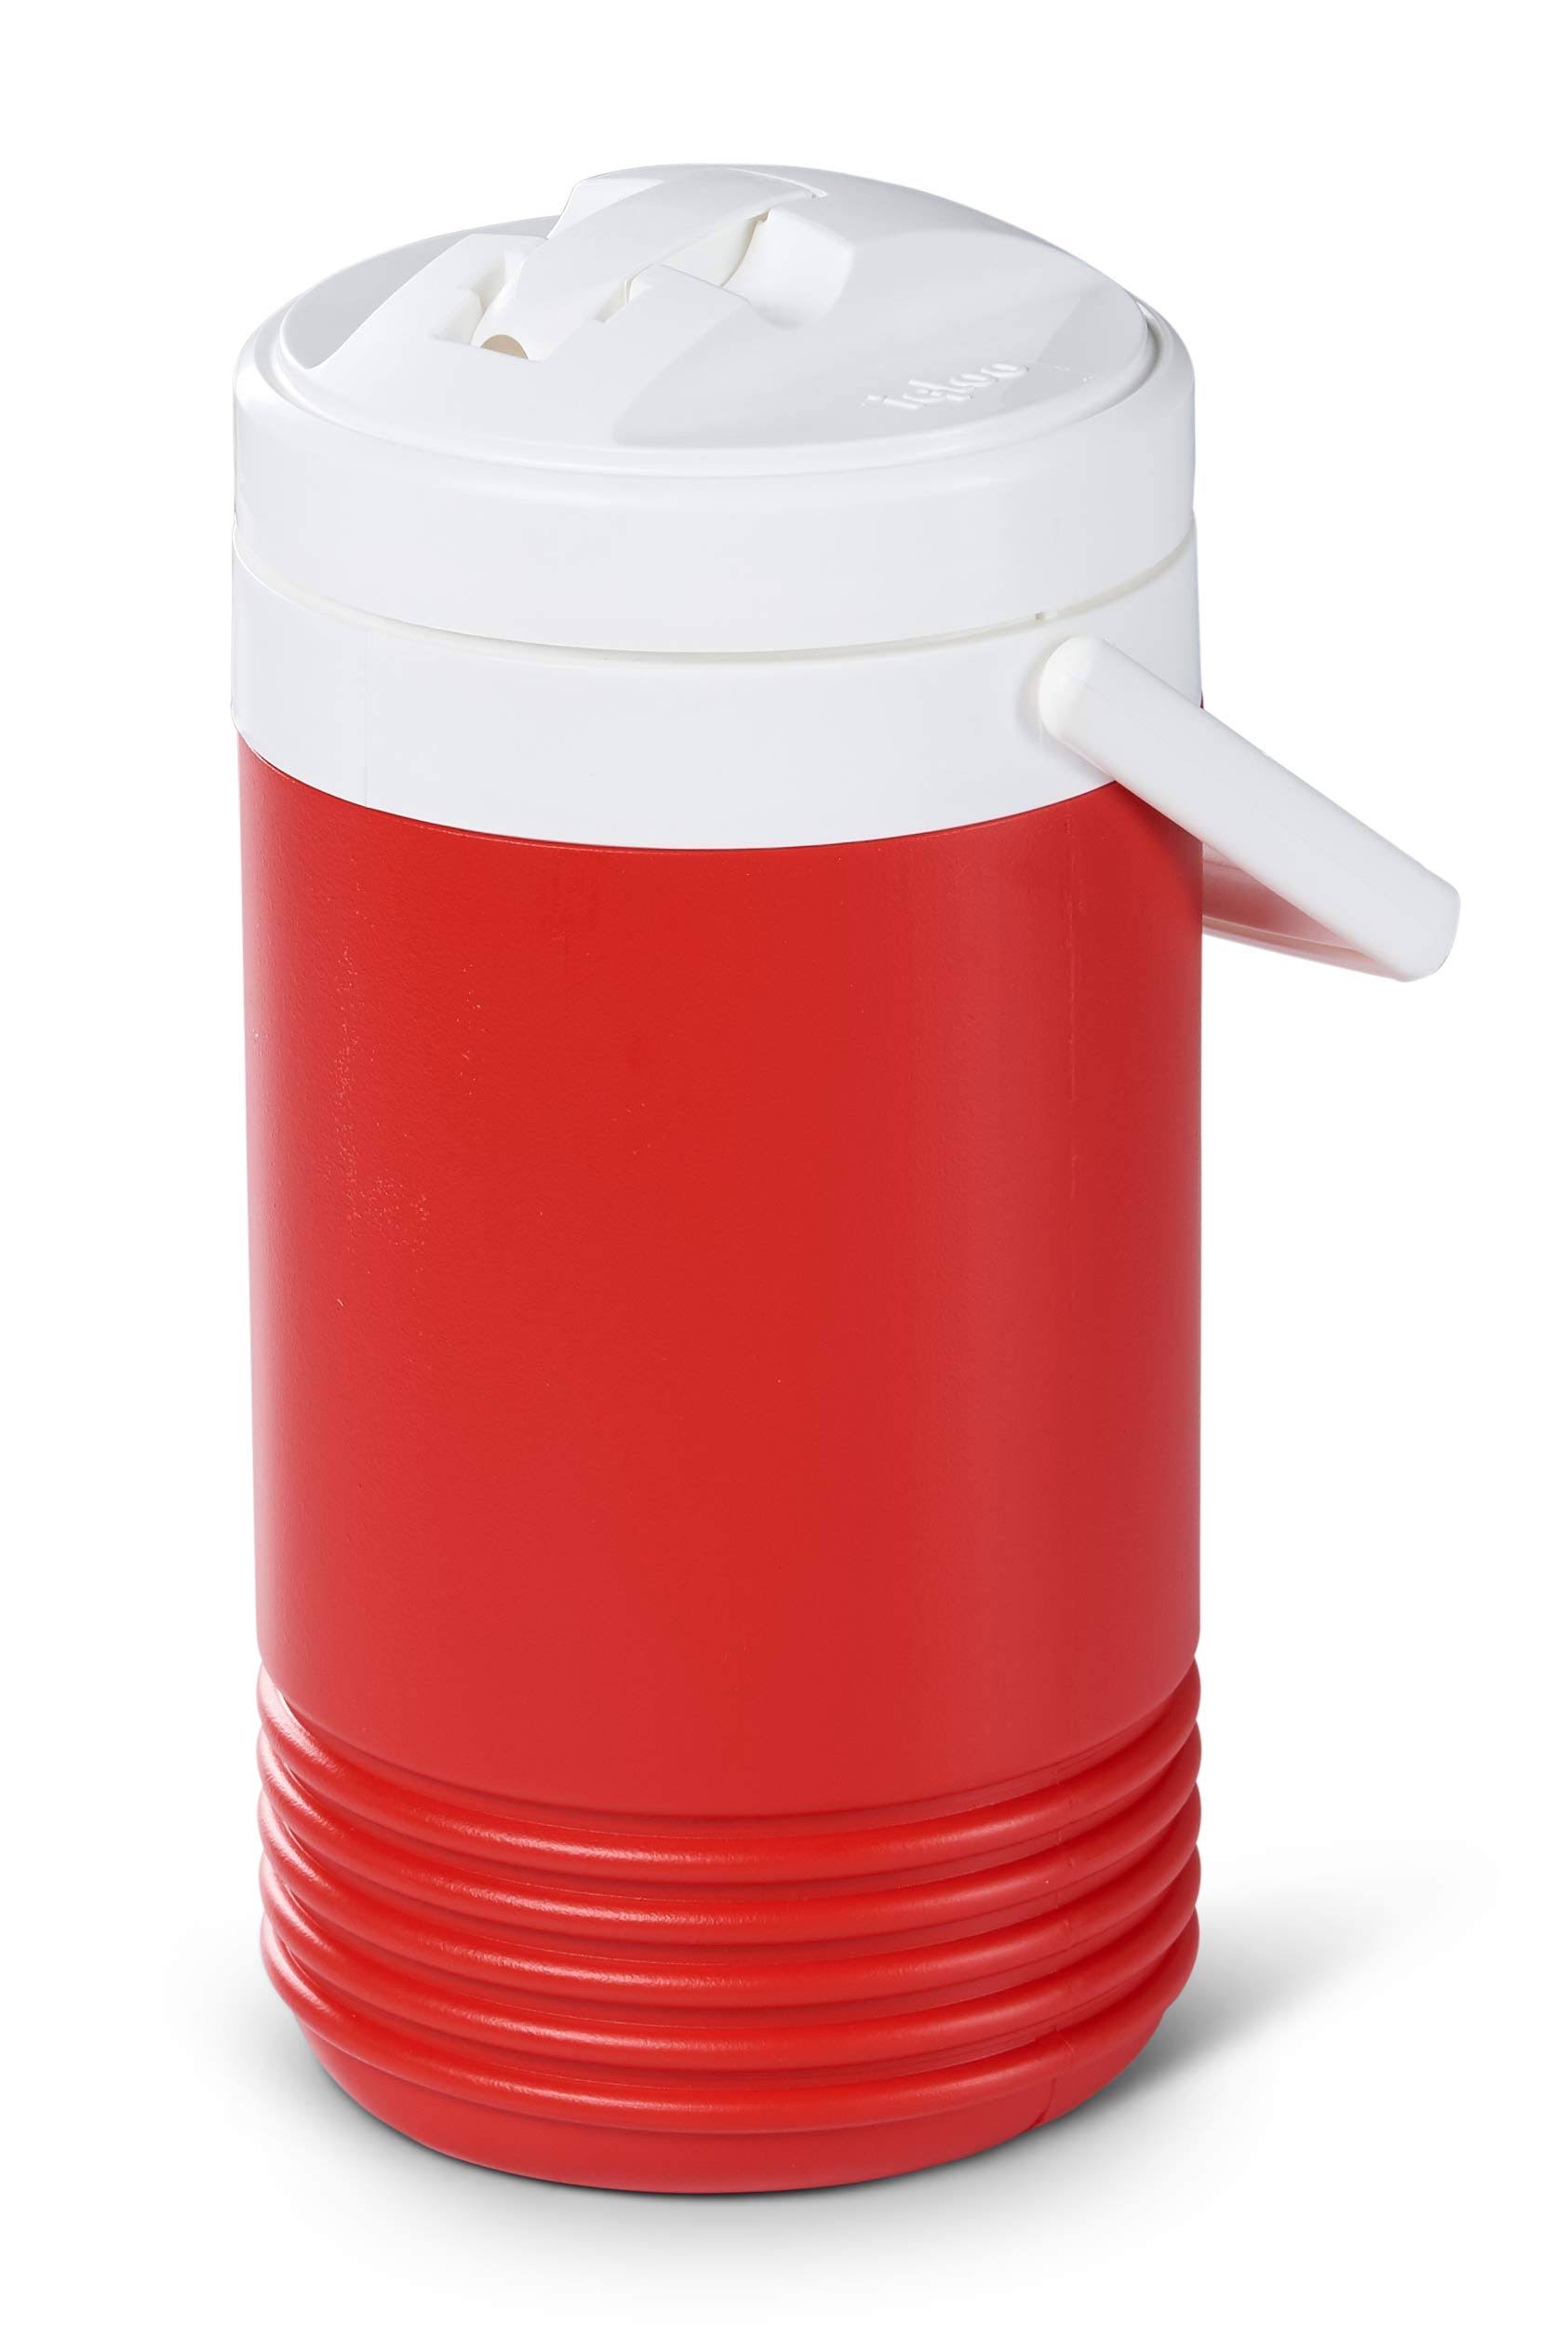 Igloo Legend Beverage Cooler - Red, 1gal